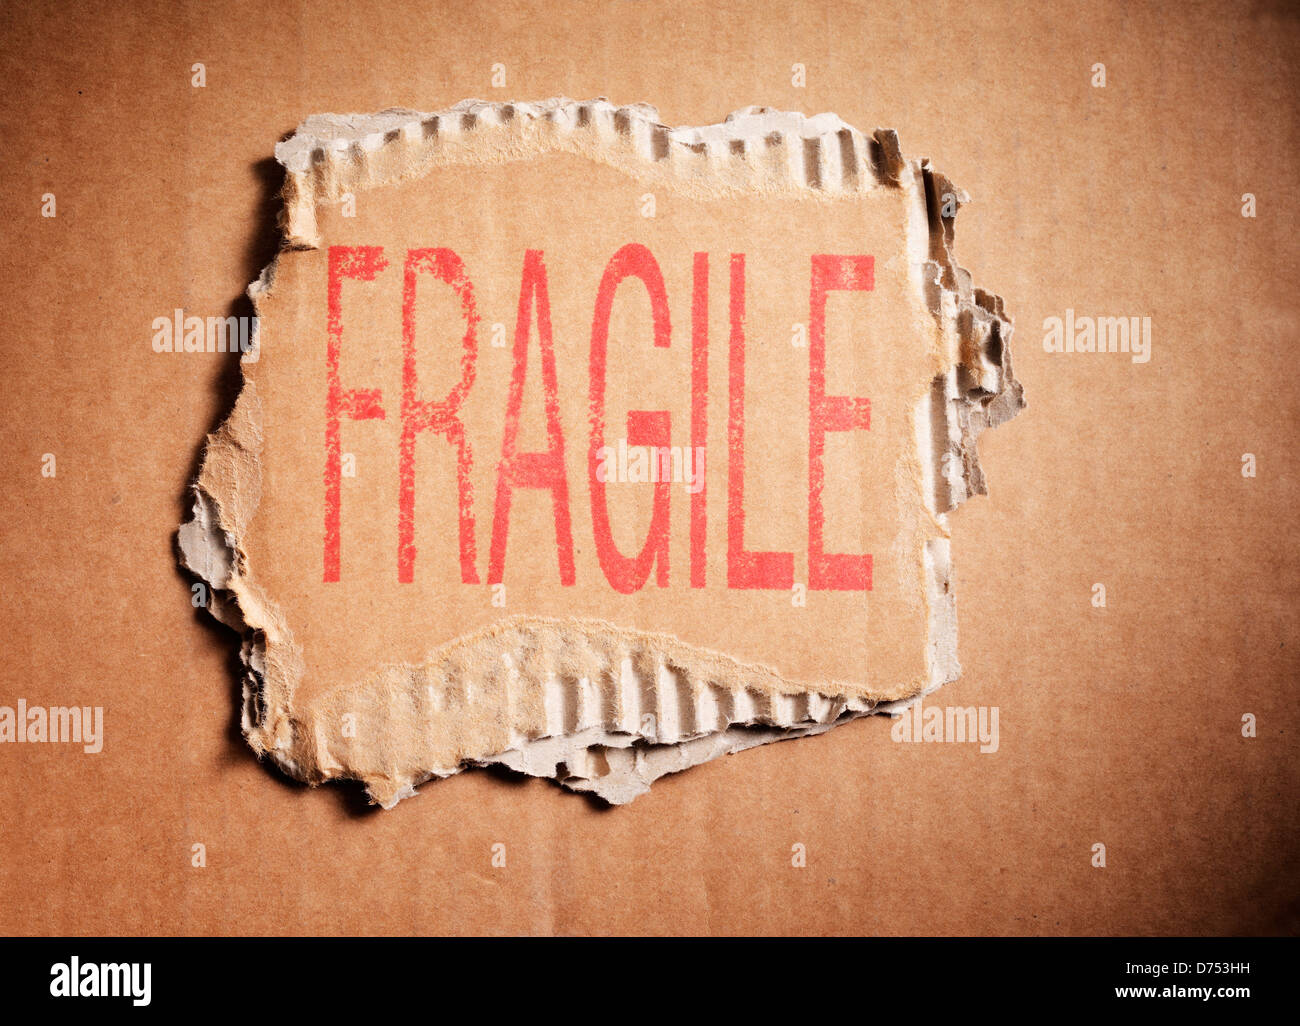 Palabra frágil estampado en un pedazo de cartón ondulado de color marrón. Foto de stock